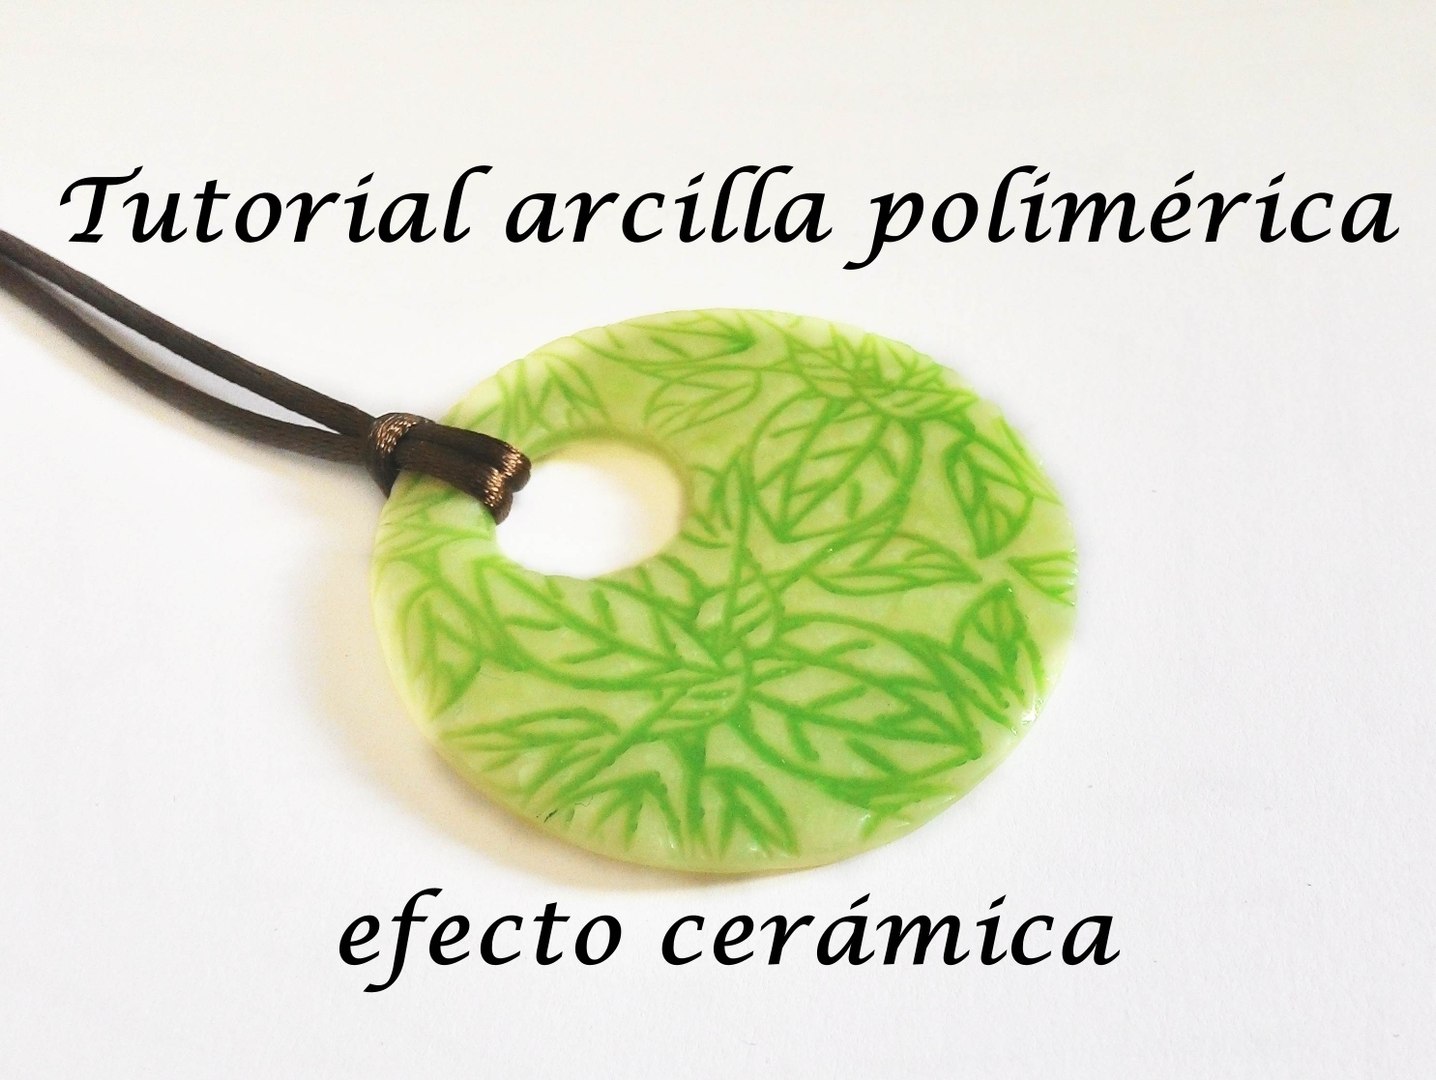 Fimo arcilla polimerica tutorial colgante collar efecto cerámica ESPAÑOL Vídeo Dailymotion